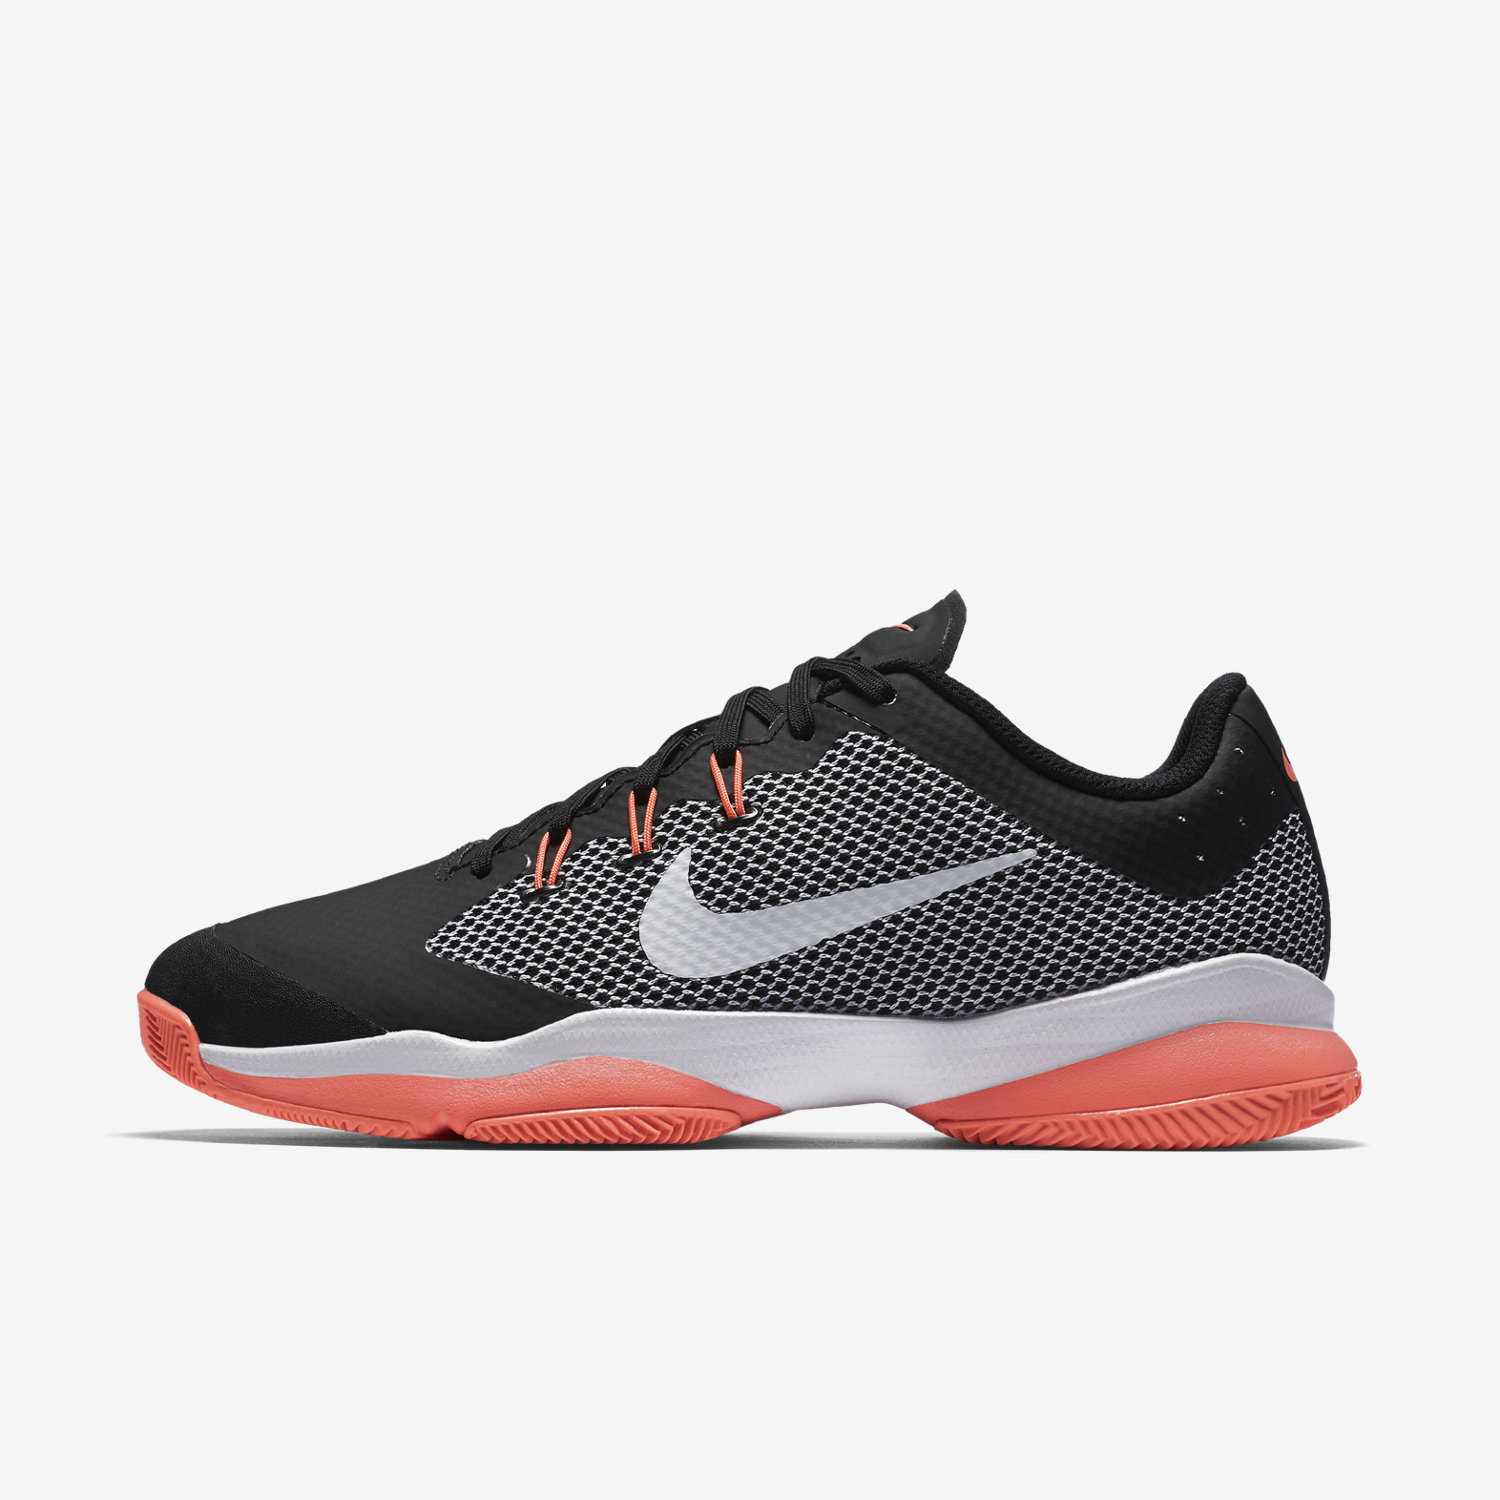 παπούτσια τένις γυναικεια NikeCourt Air Zoom Ultra μαυρα/πορτοκαλι 81103515YL